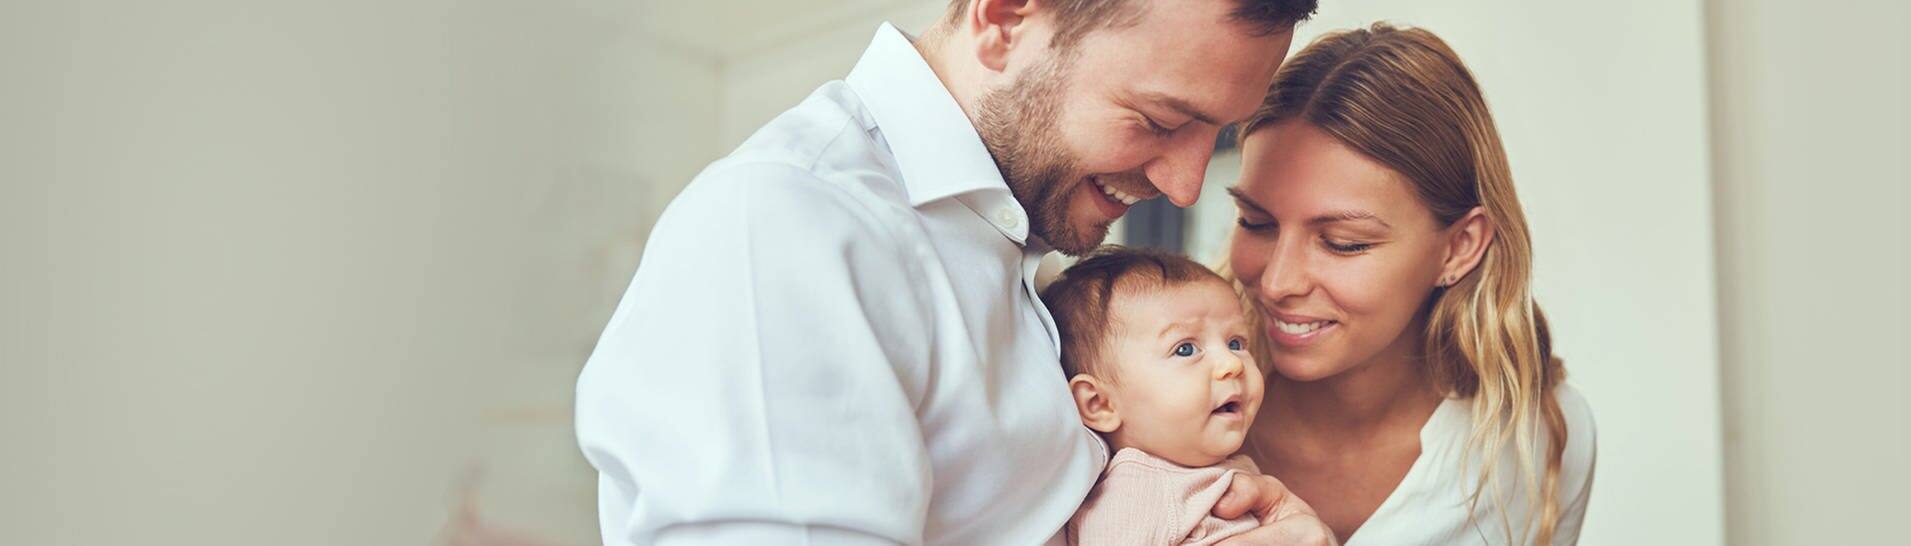 Junge Eltern mit ihrem Baby. Der Vater hält lachend das Baby auf dem Arm, die Mutter lächelt das Kind ebenfalls an. (Foto: Adobe Stock, Flamingo Images)